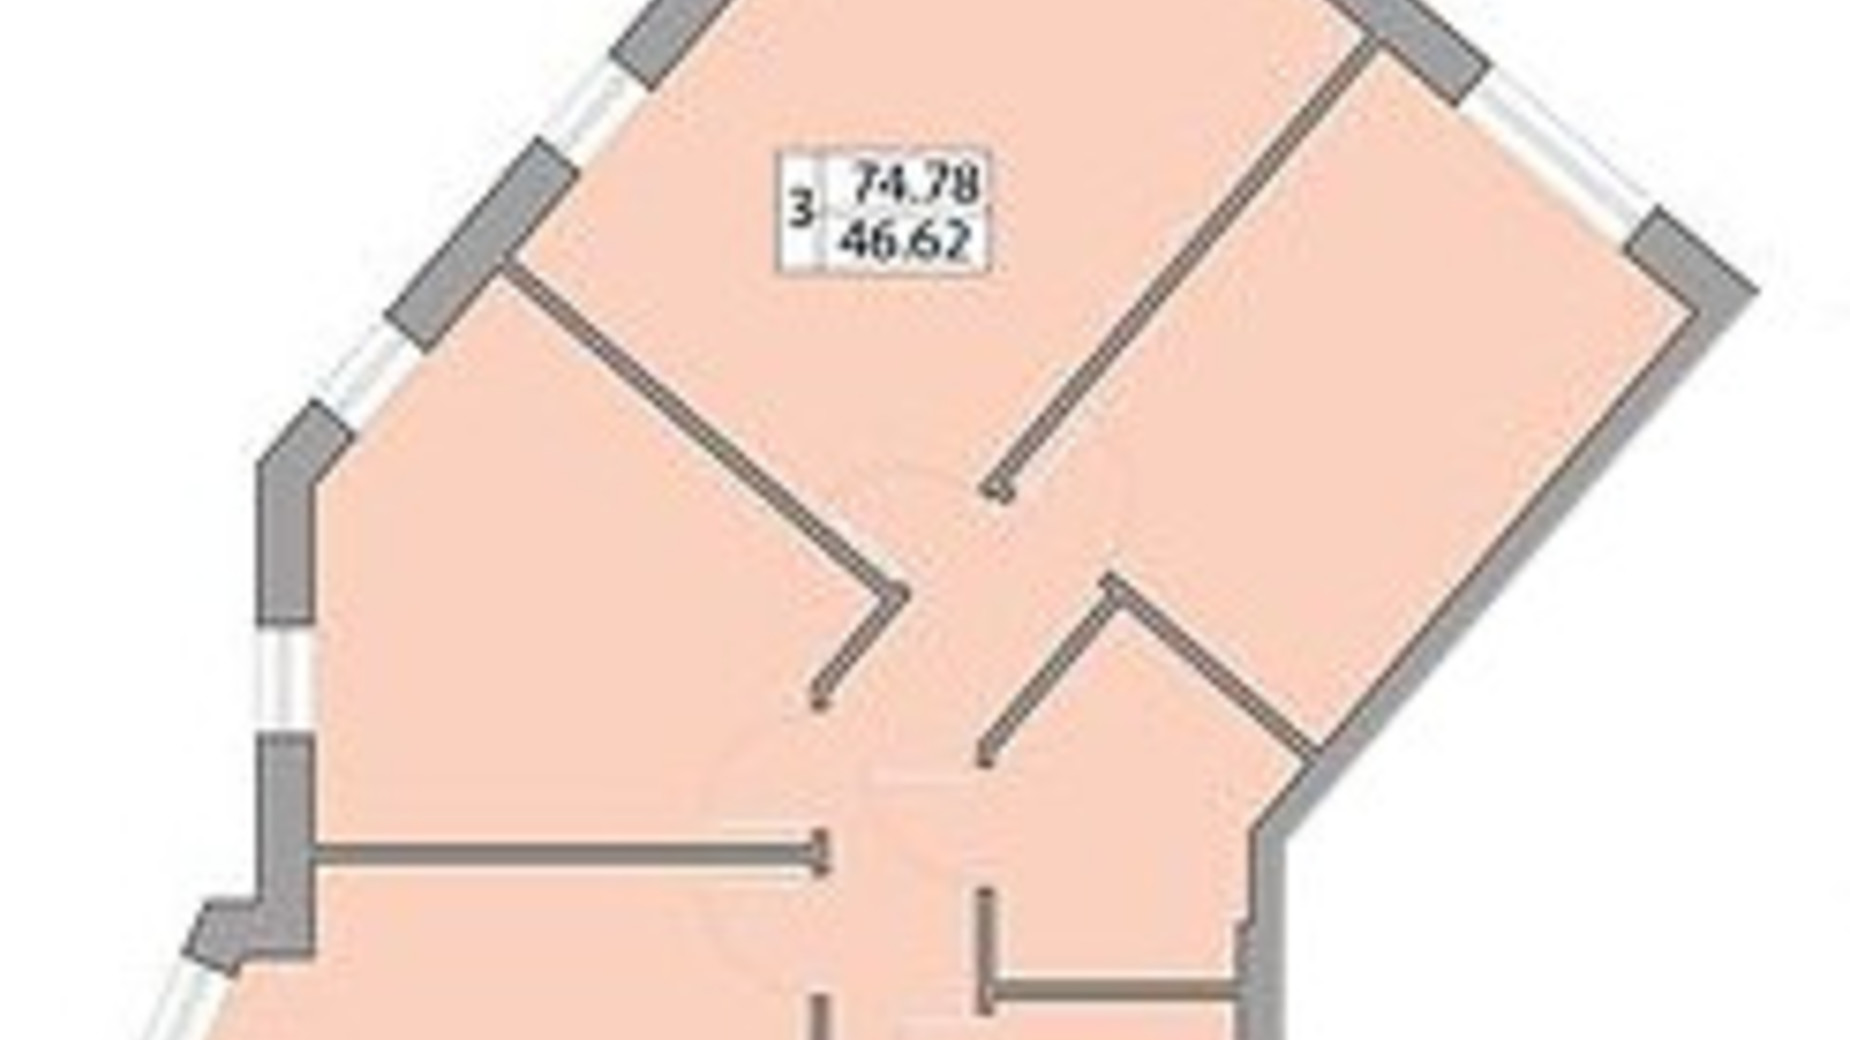 Планування 3-кімнатної квартири в ЖК Praha Platinum 74.78 м², фото 586279